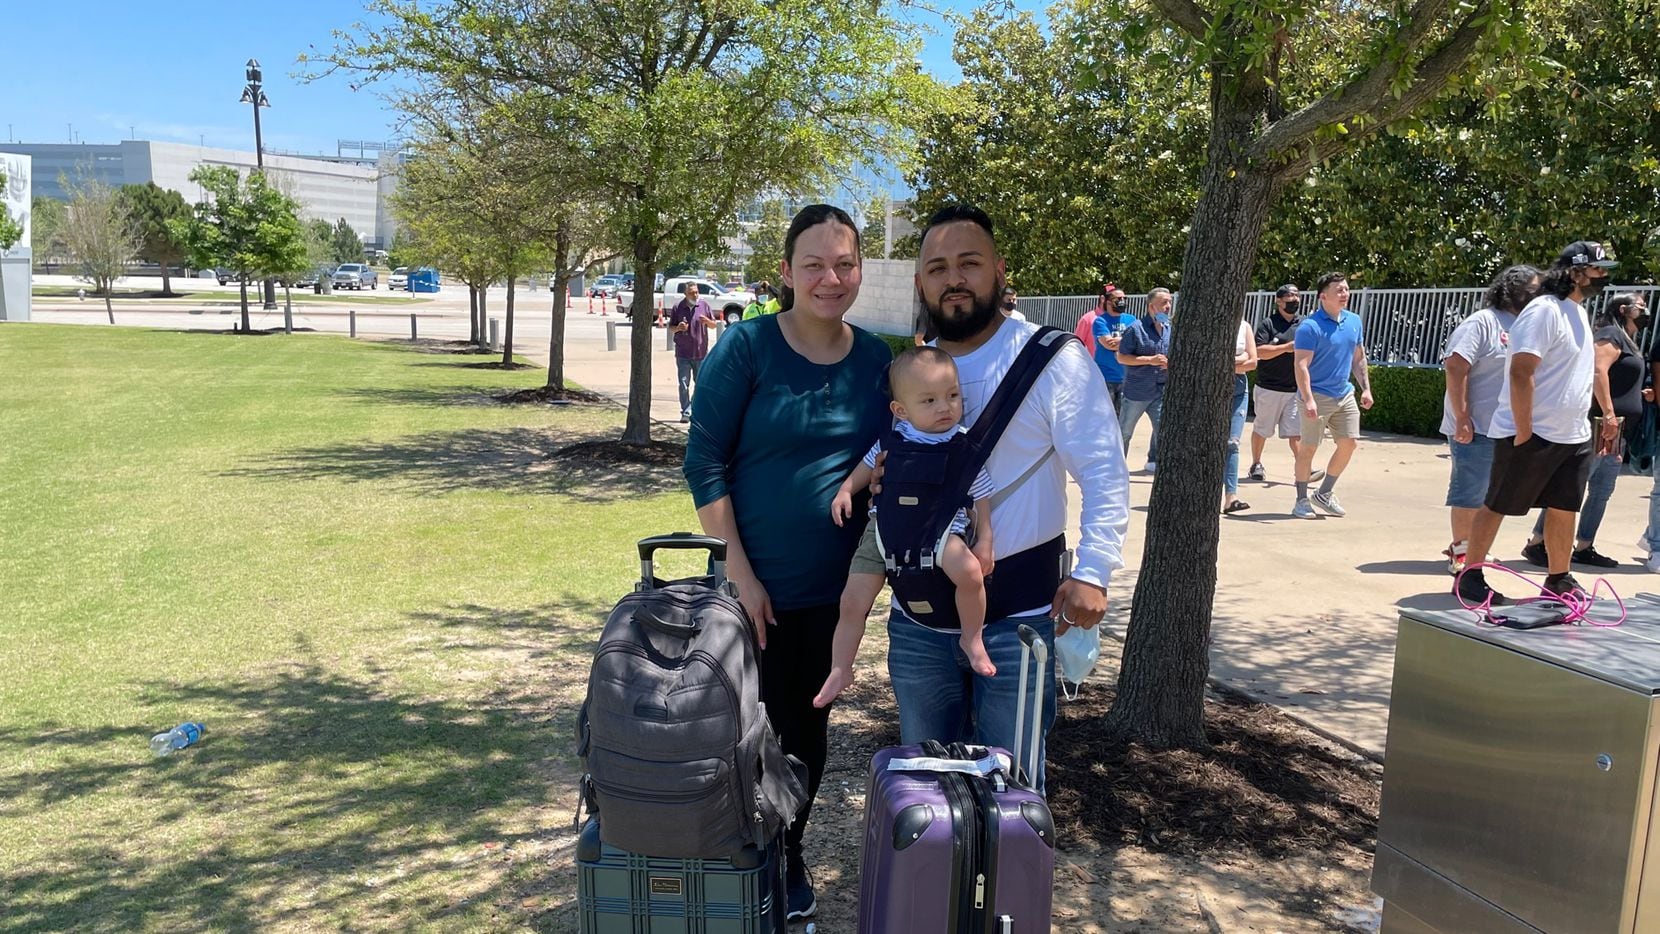 Laura Cárcamo, Gustavo Peña, y su hijo de 11 meses, llegaron con todo y maletas al AT&T Stadium para ver a Saúl "Canelo" Álvarez.